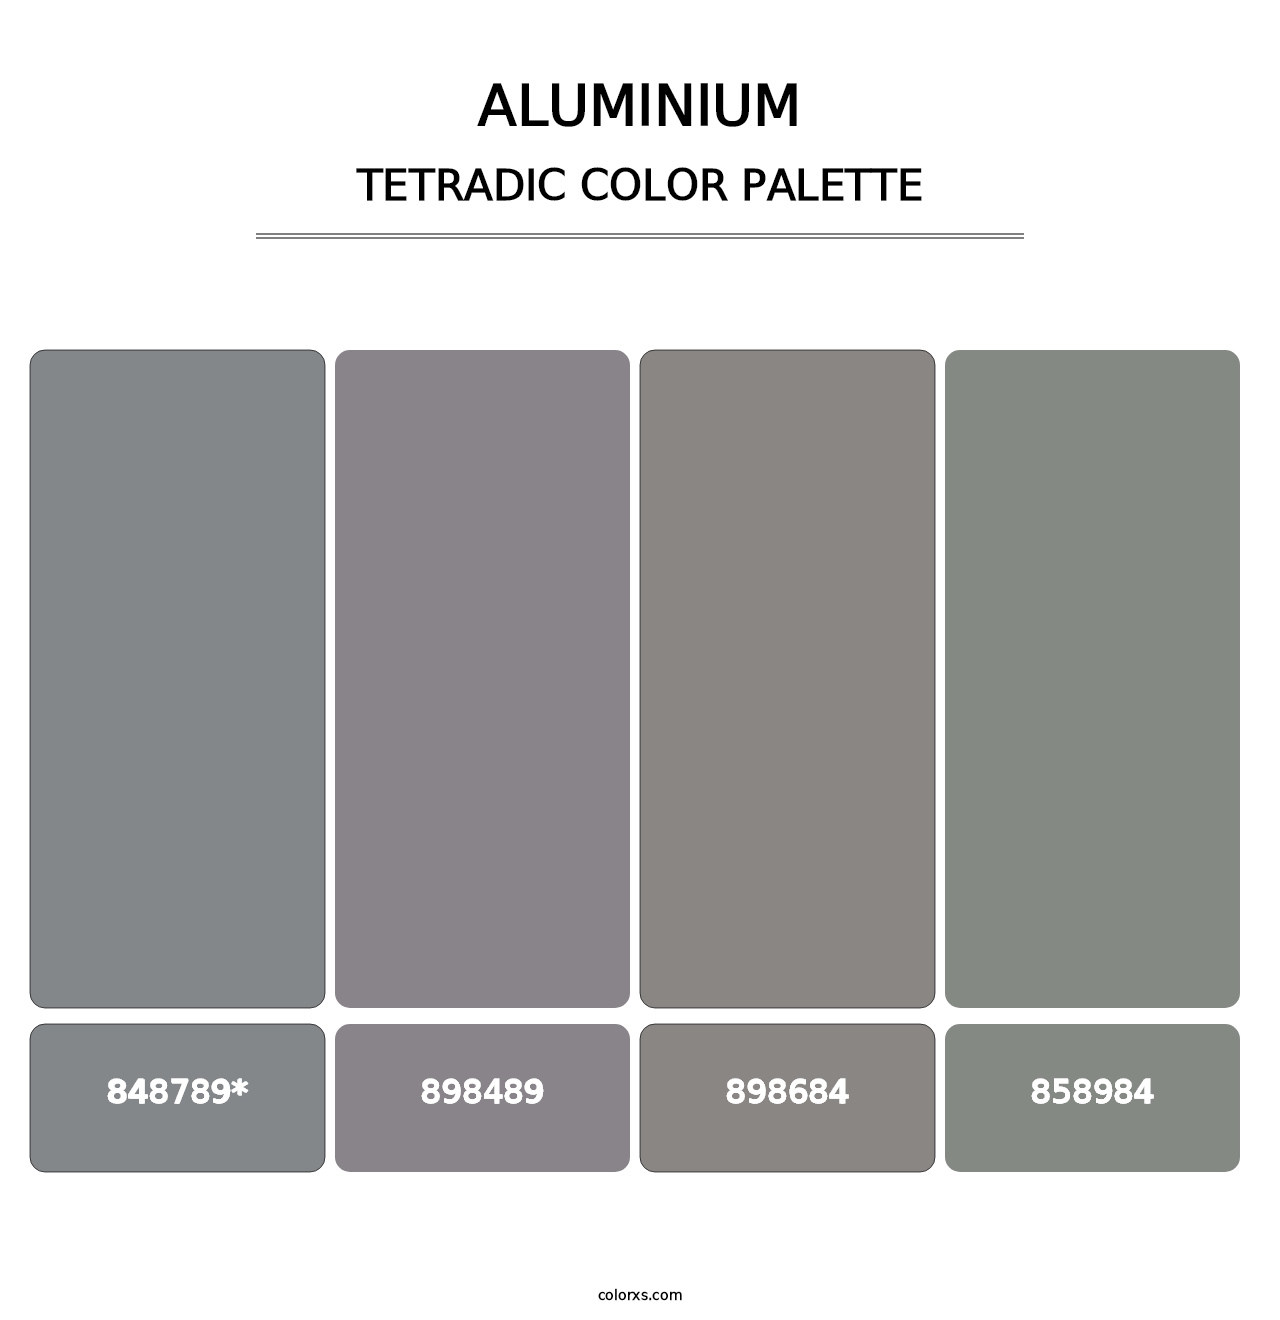 Aluminium - Tetradic Color Palette